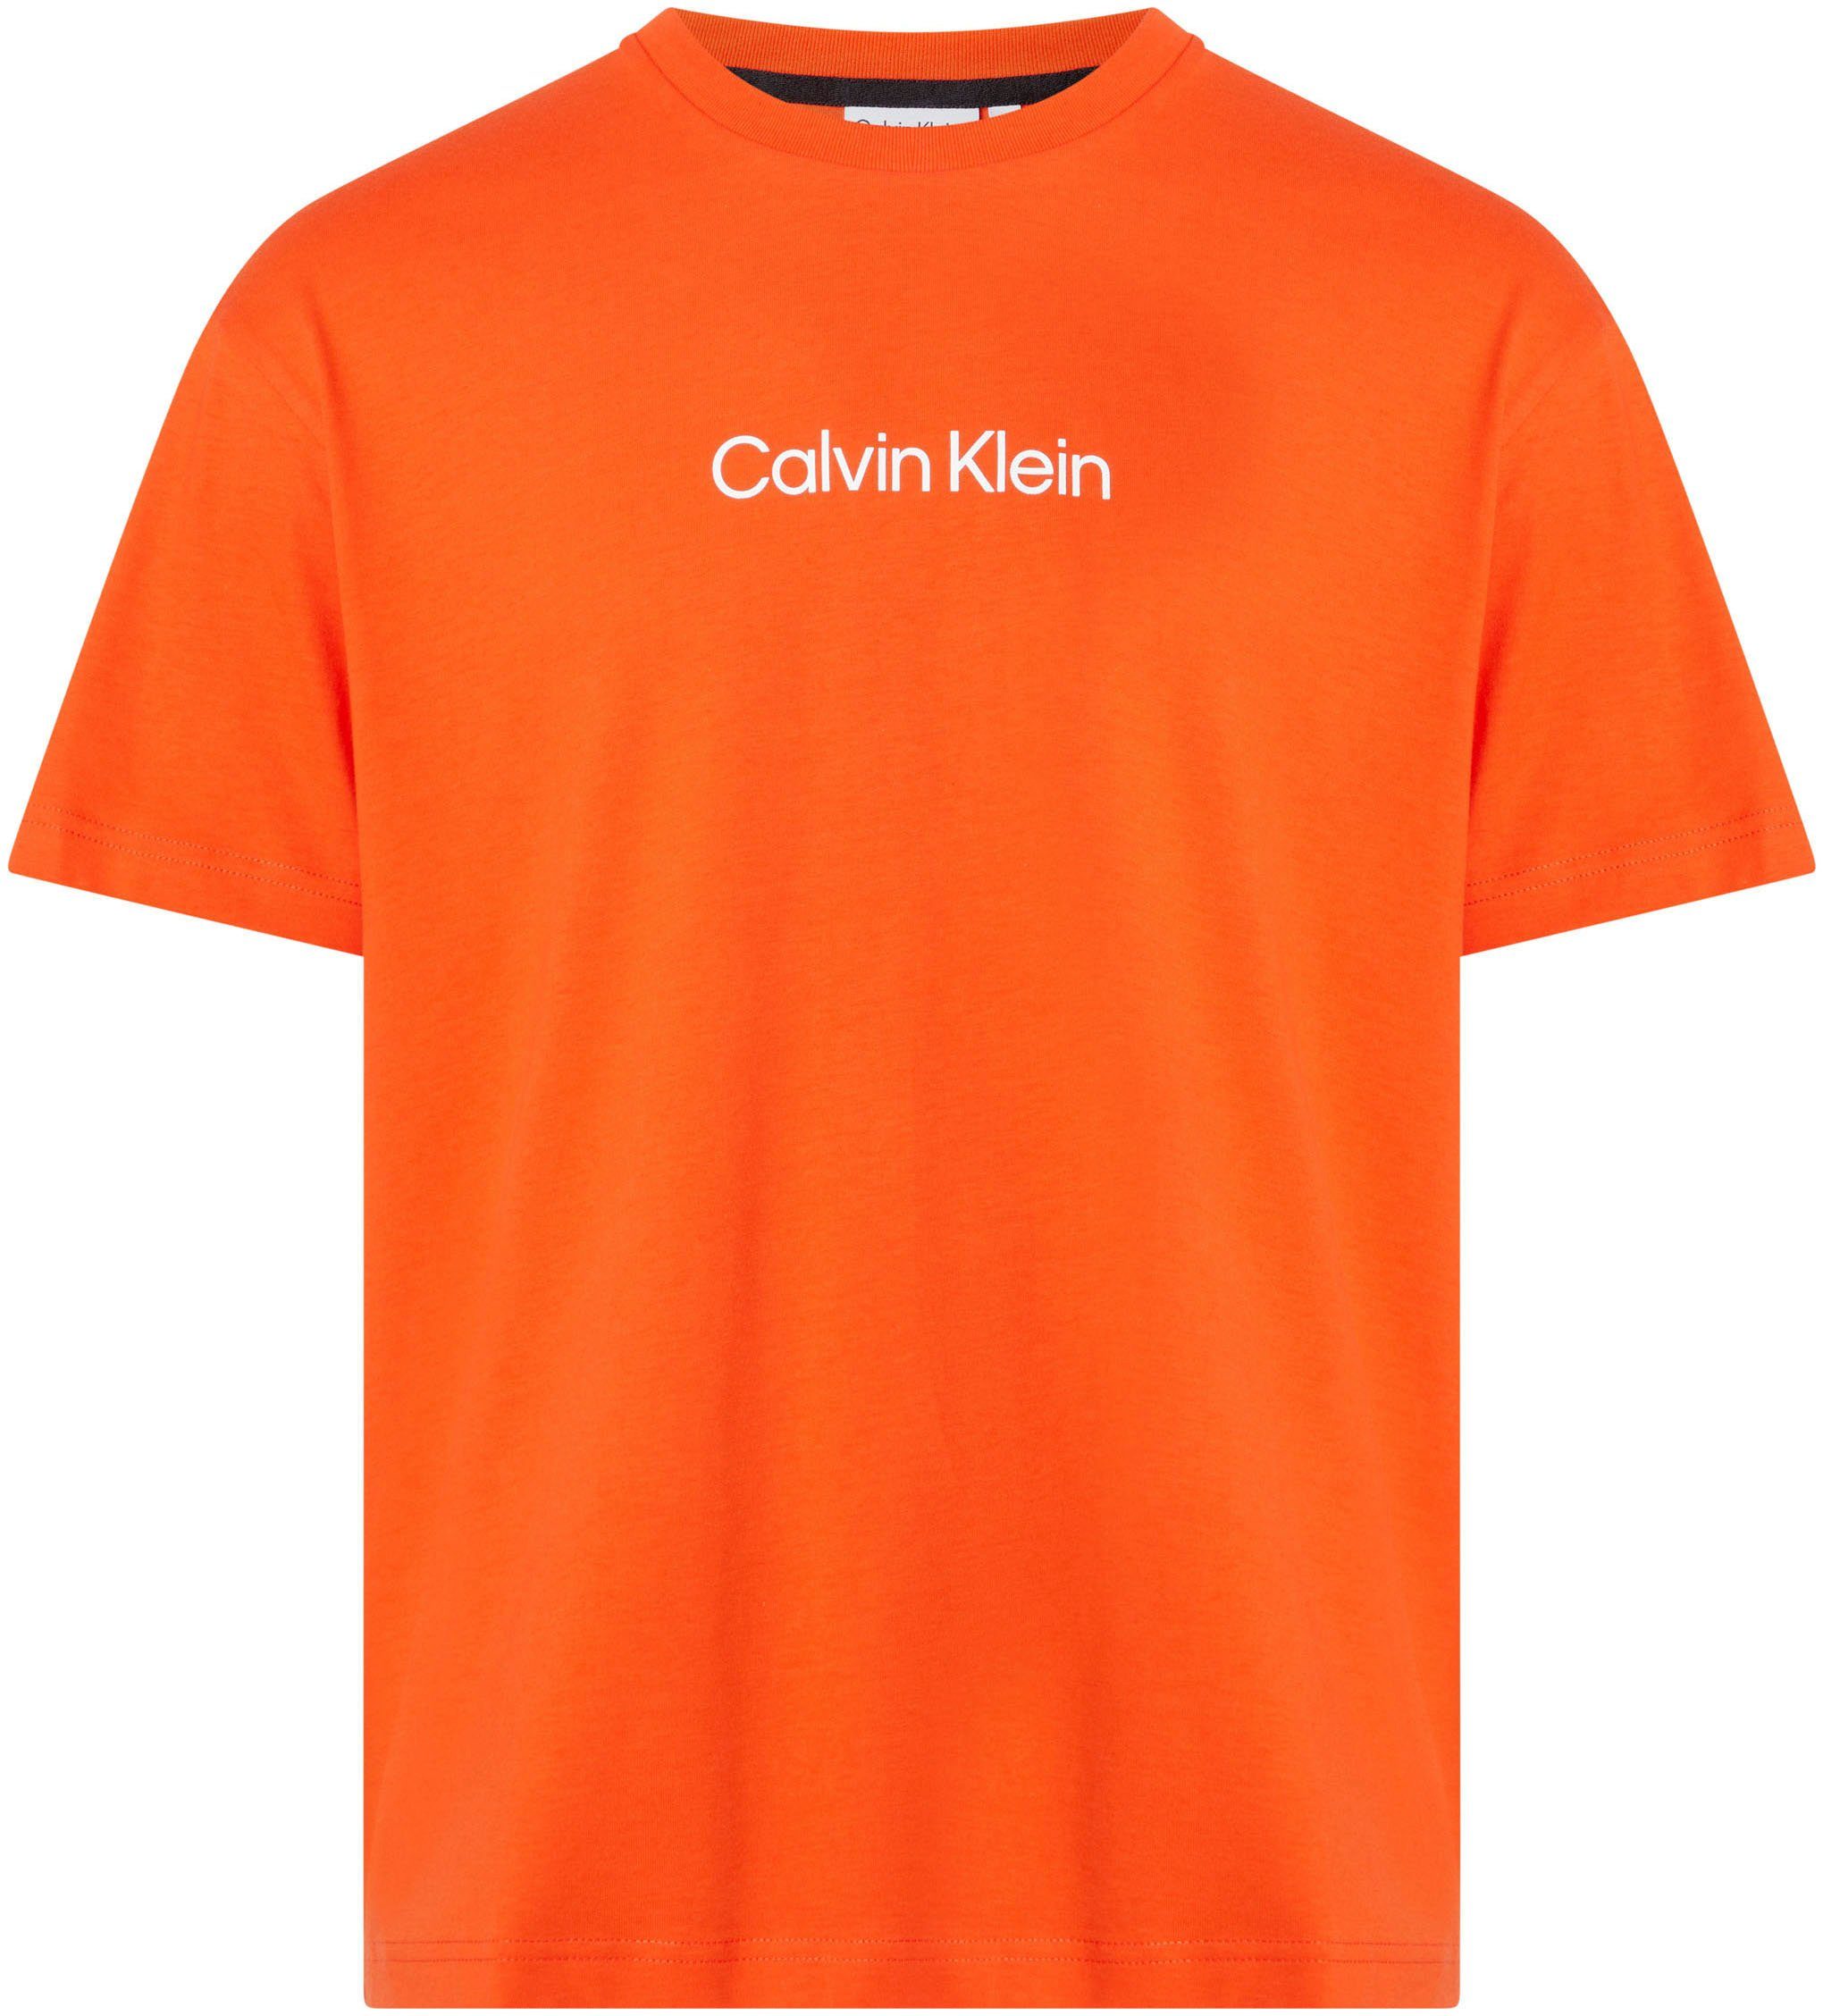 Calvin Klein T-Shirt HERO LOGO COMFORT T-SHIRT mit aufgedrucktem Markenlabel Spicy Orange